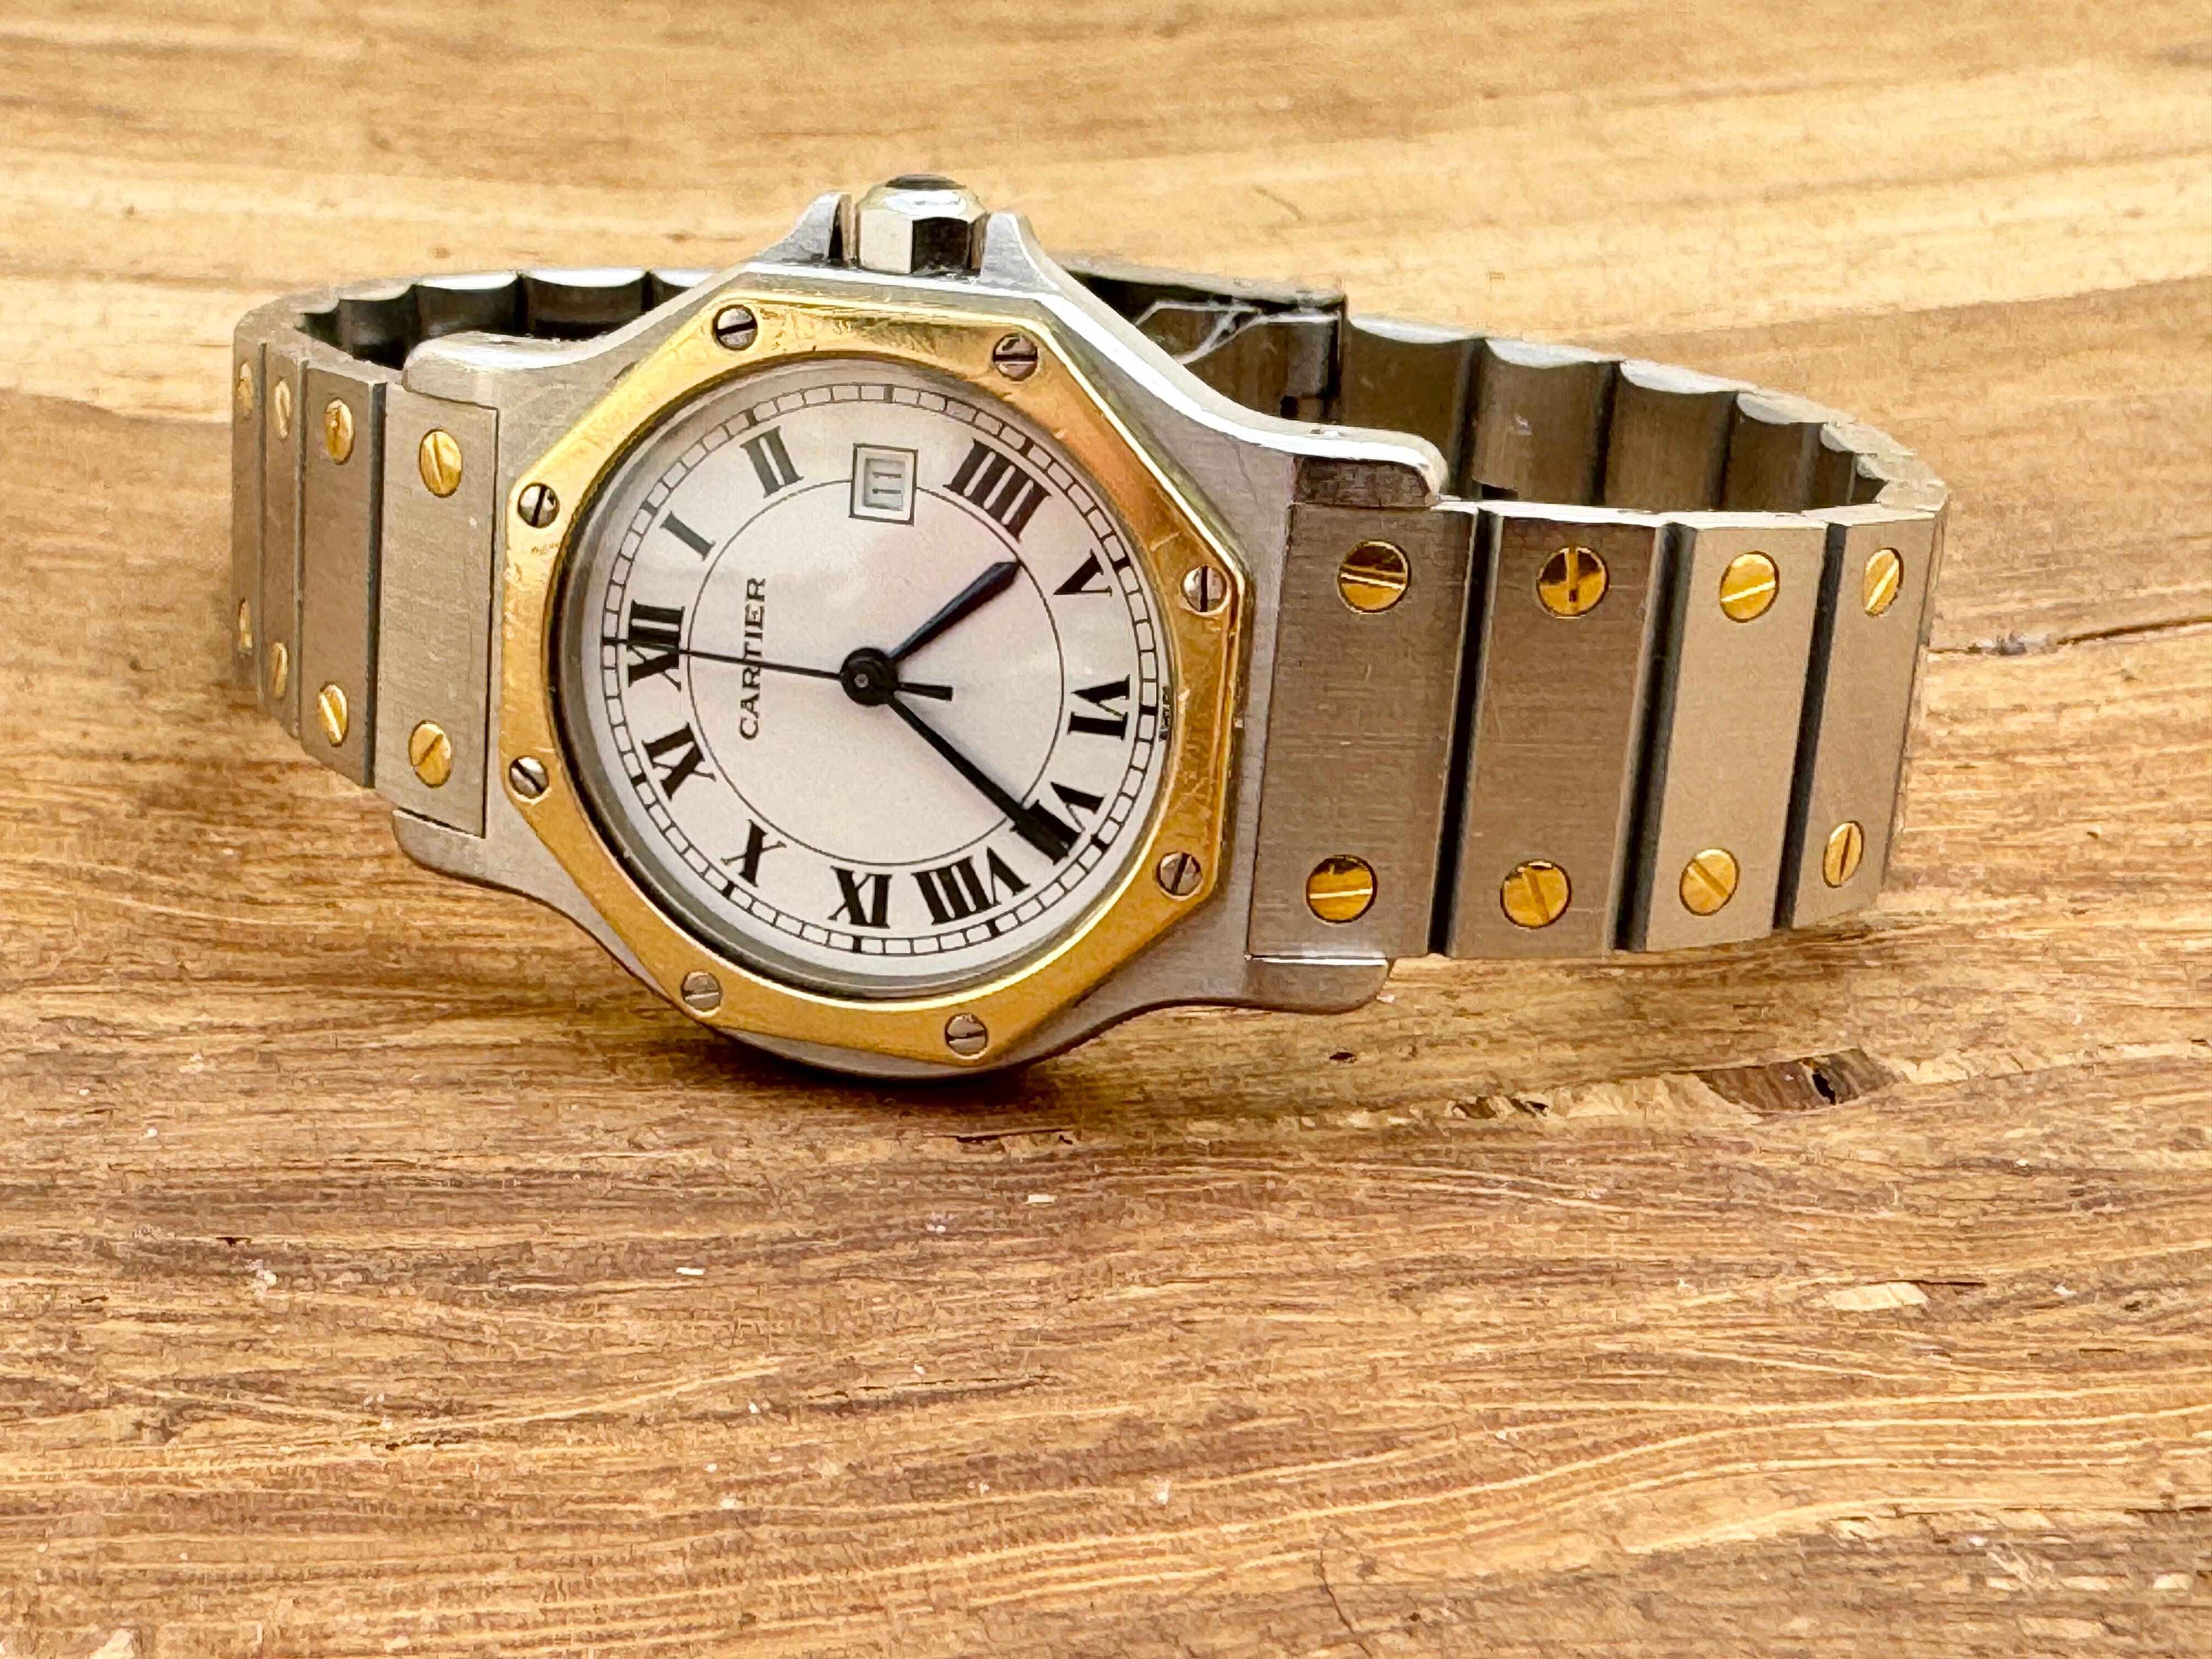 Marke : Cartier

Modell: Santos Achteck

Aktenzeichen: 29662

Land der Herstellung: Schweiz

Uhrwerk: Automatik

MATERIAL des Gehäuses: Rostfreier Stahl/Gold

Maße: 30mm Durchmesser (ohne Krone)

Band Typ : Edelstahl/Gold mit markierter